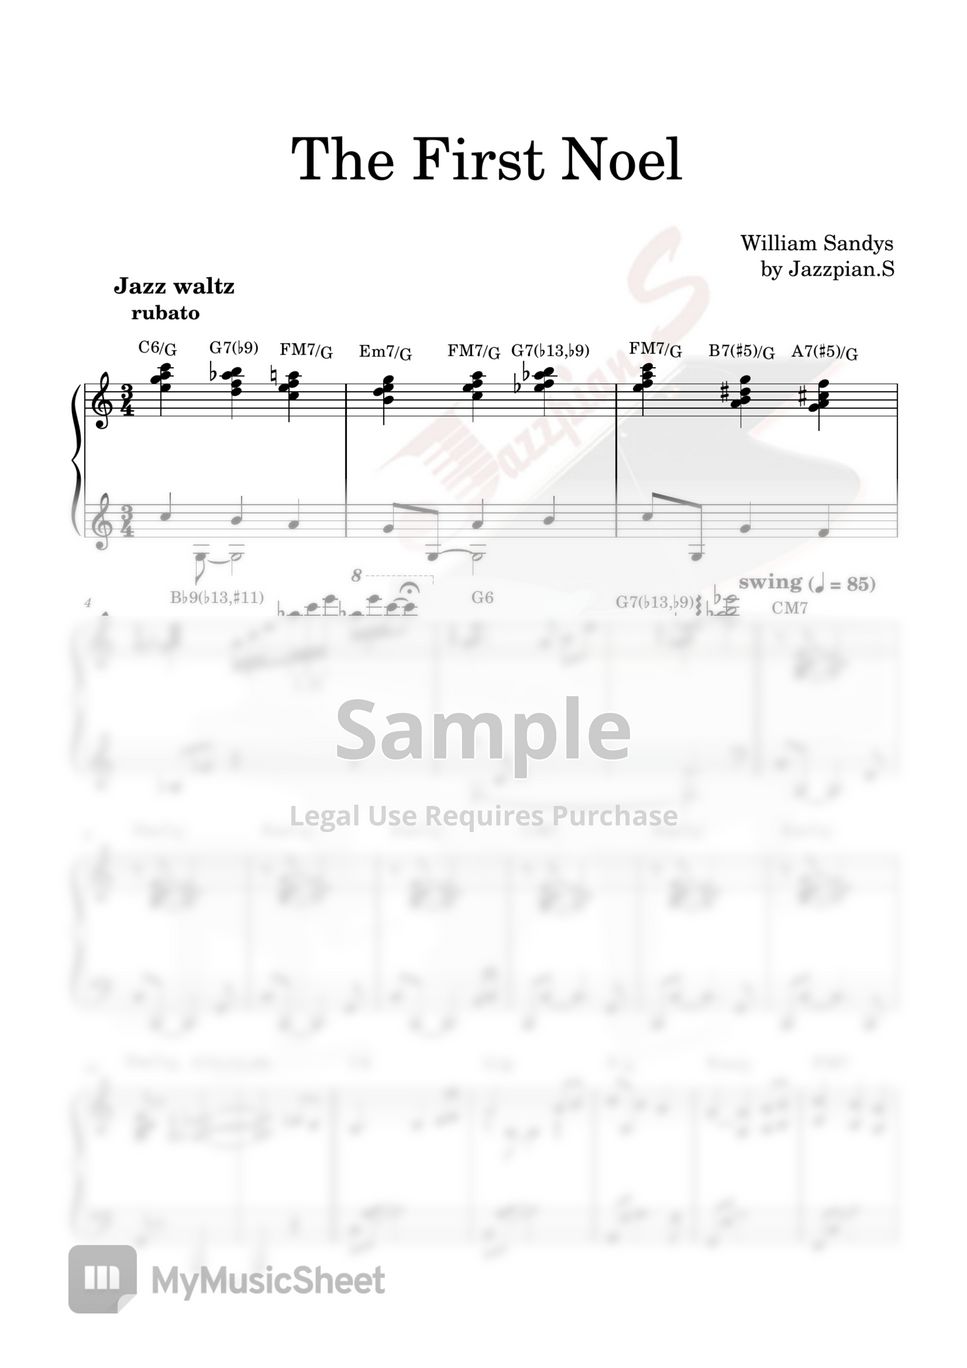 William Sandys - The First Noel (Jazz waltz) by Jazzpian.S